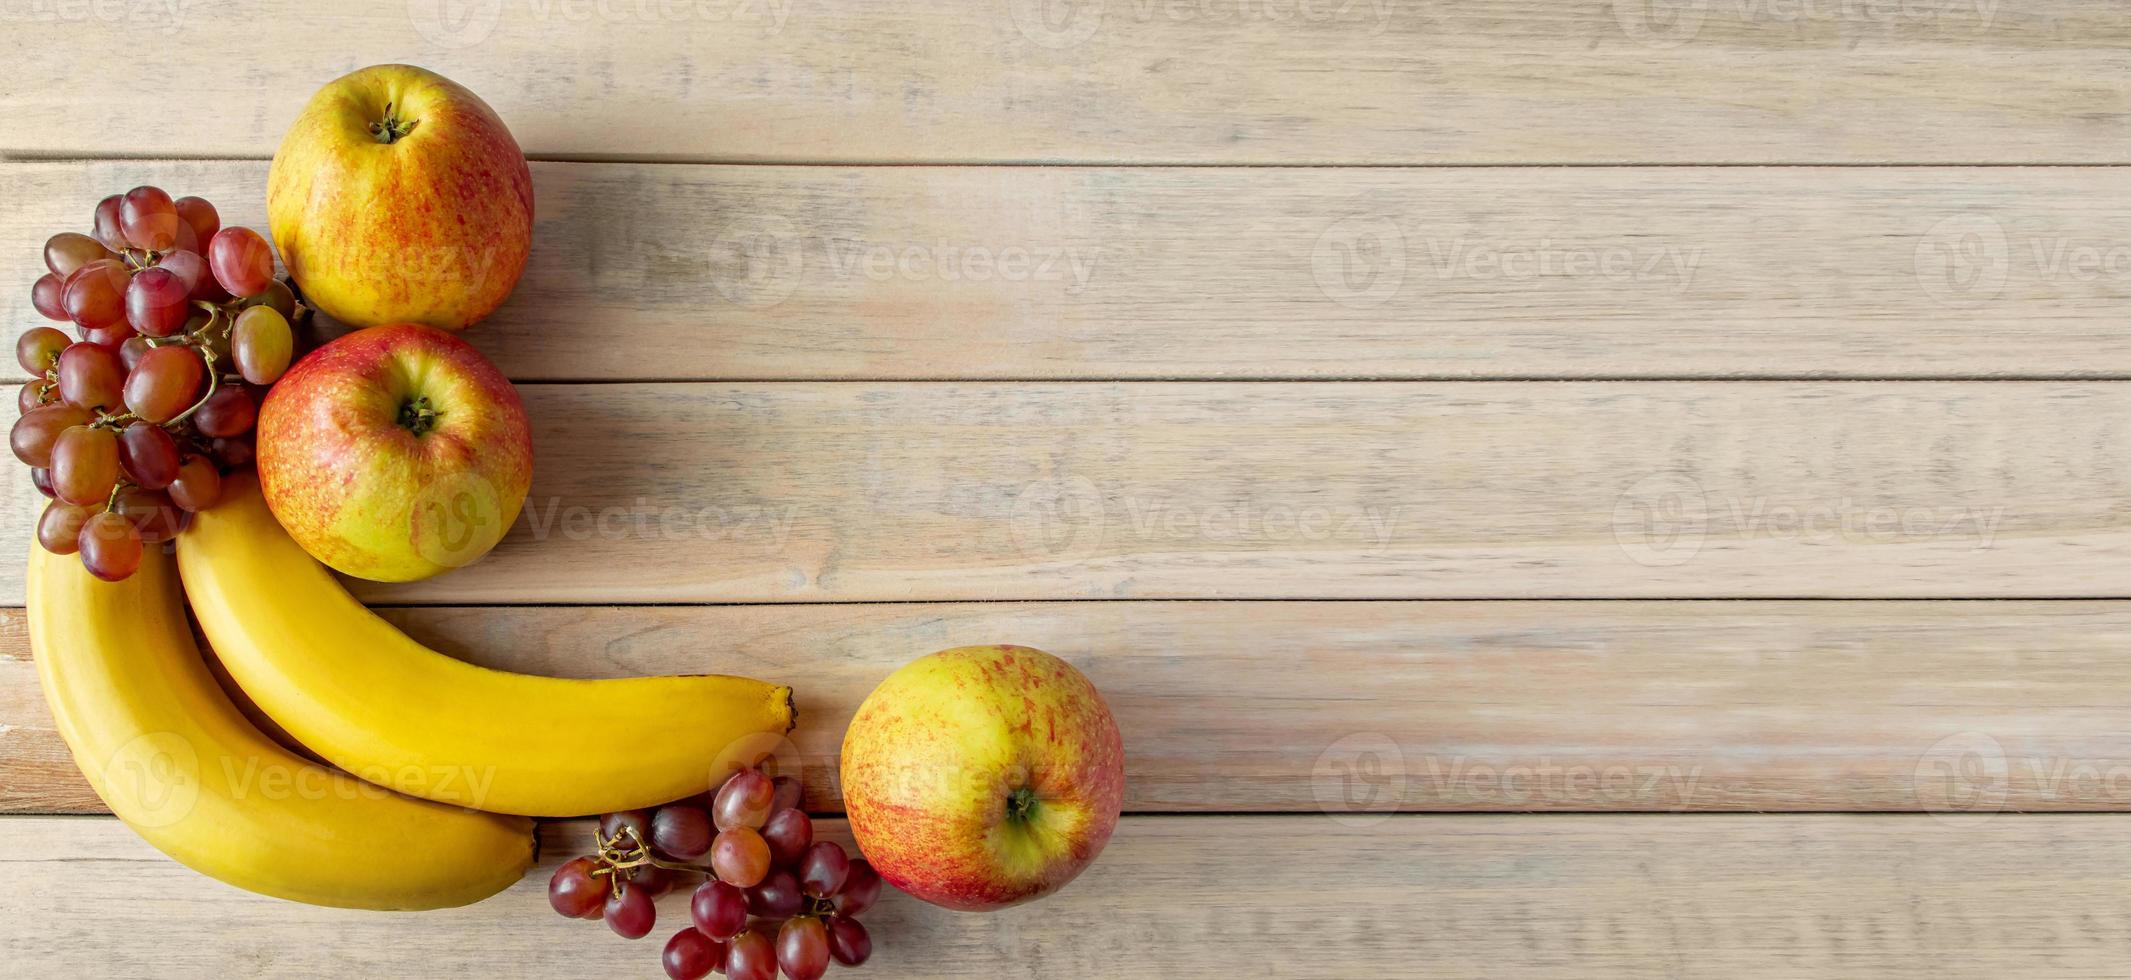 reife Früchte auf Holzhintergrund. Bananen, Äpfel und Weintrauben. Erntekonzept. foto